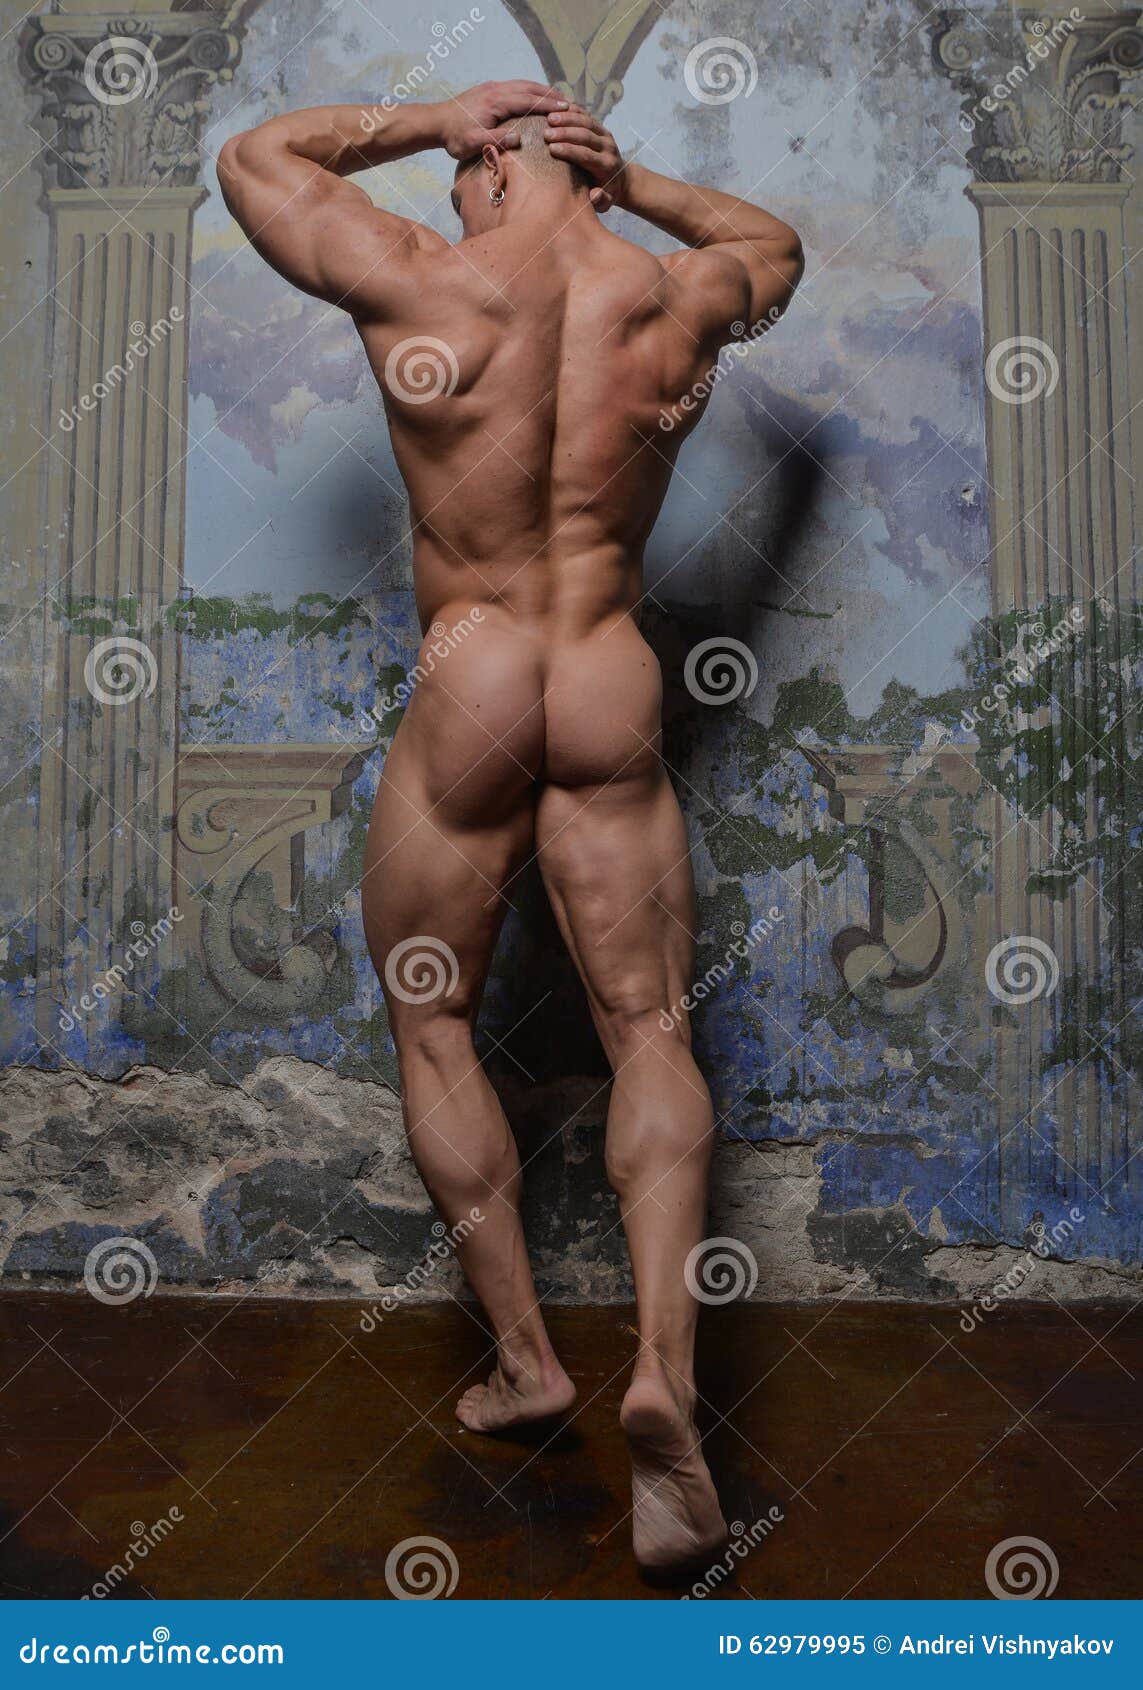 男性裸体模特儿库存图片 图片包括有男人 反气旋 豪华 大腿 性别 巡回表演者 执行 无法认出